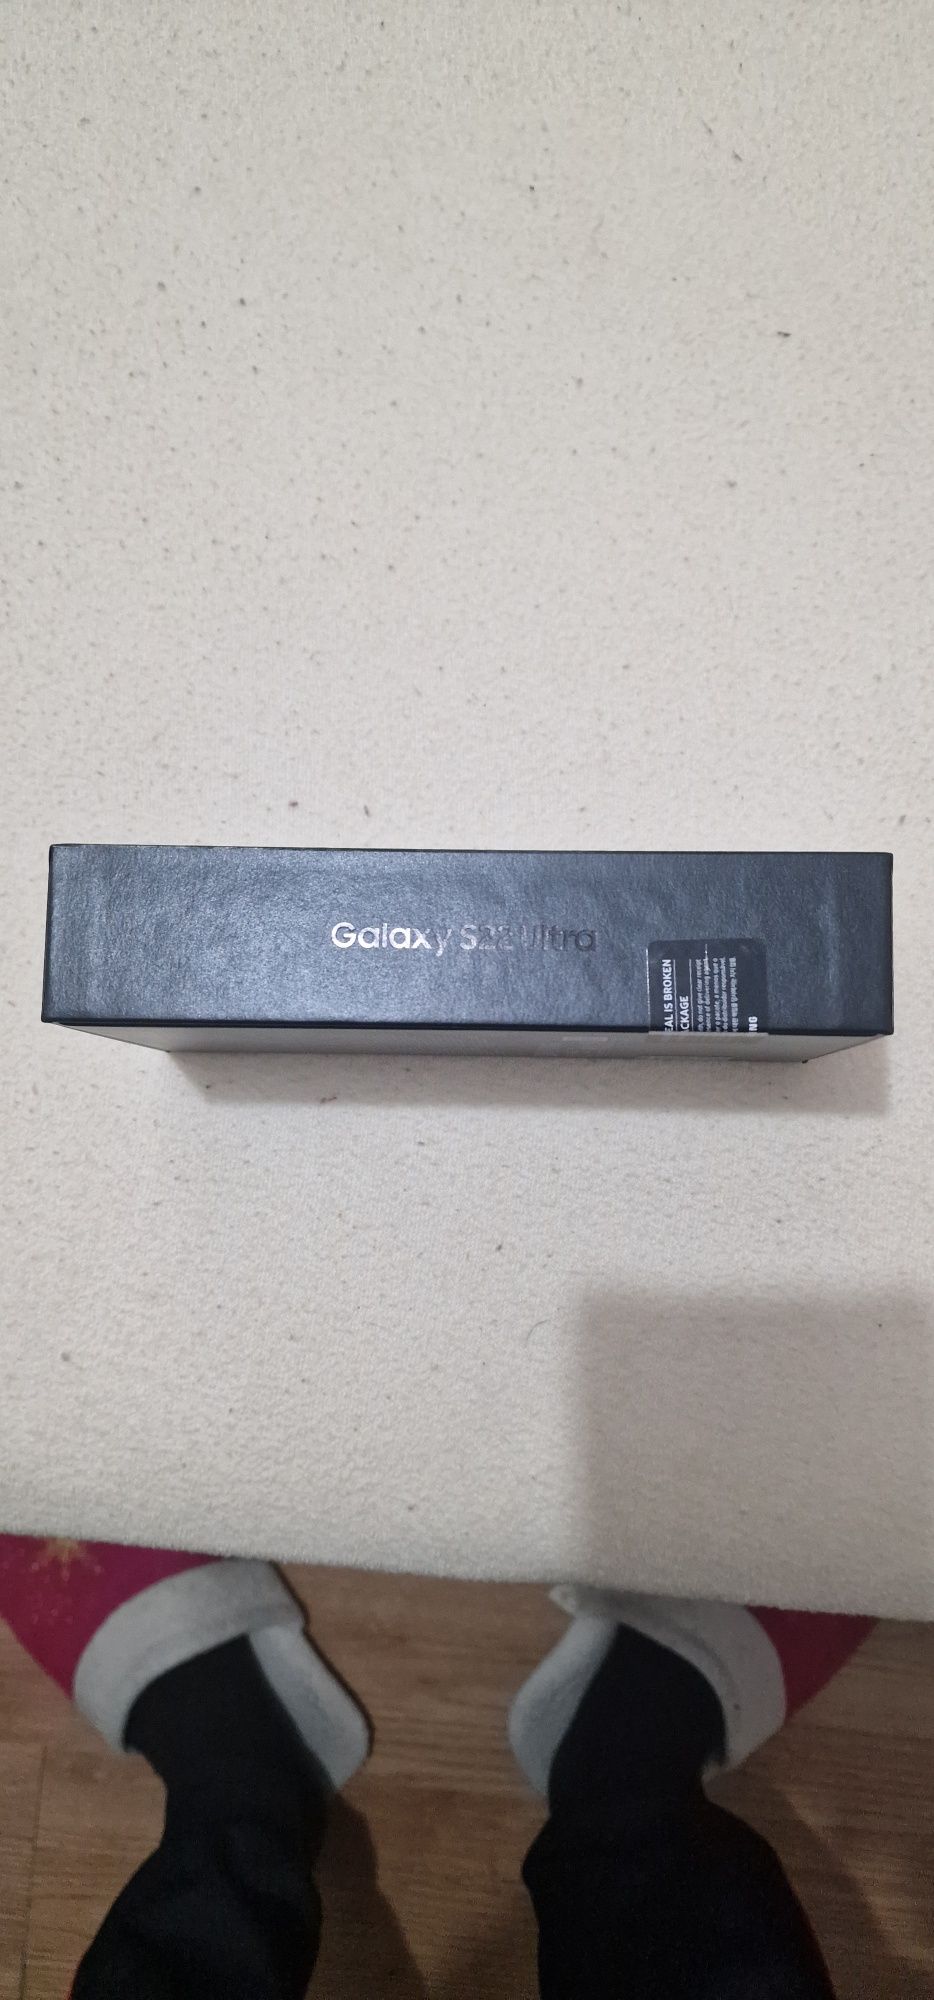 Samsung Galaxy S22 Ultra 

- Culoare: Black;
- Stocare internă: 128GB